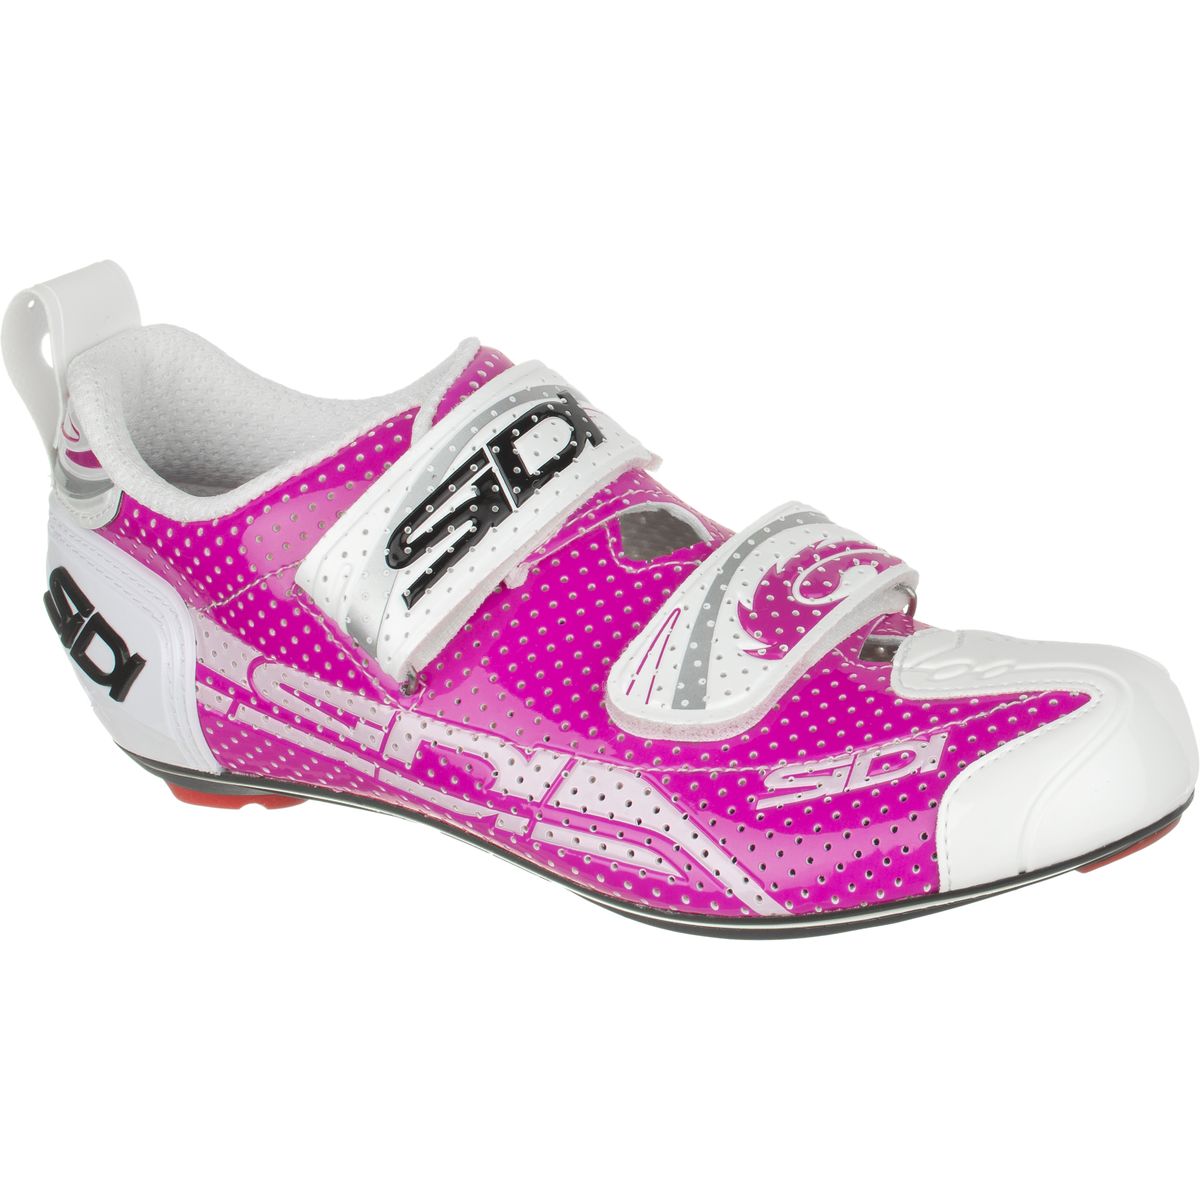 Sidi T-4 Air Carbon Composite Cycling Shoe - Women's